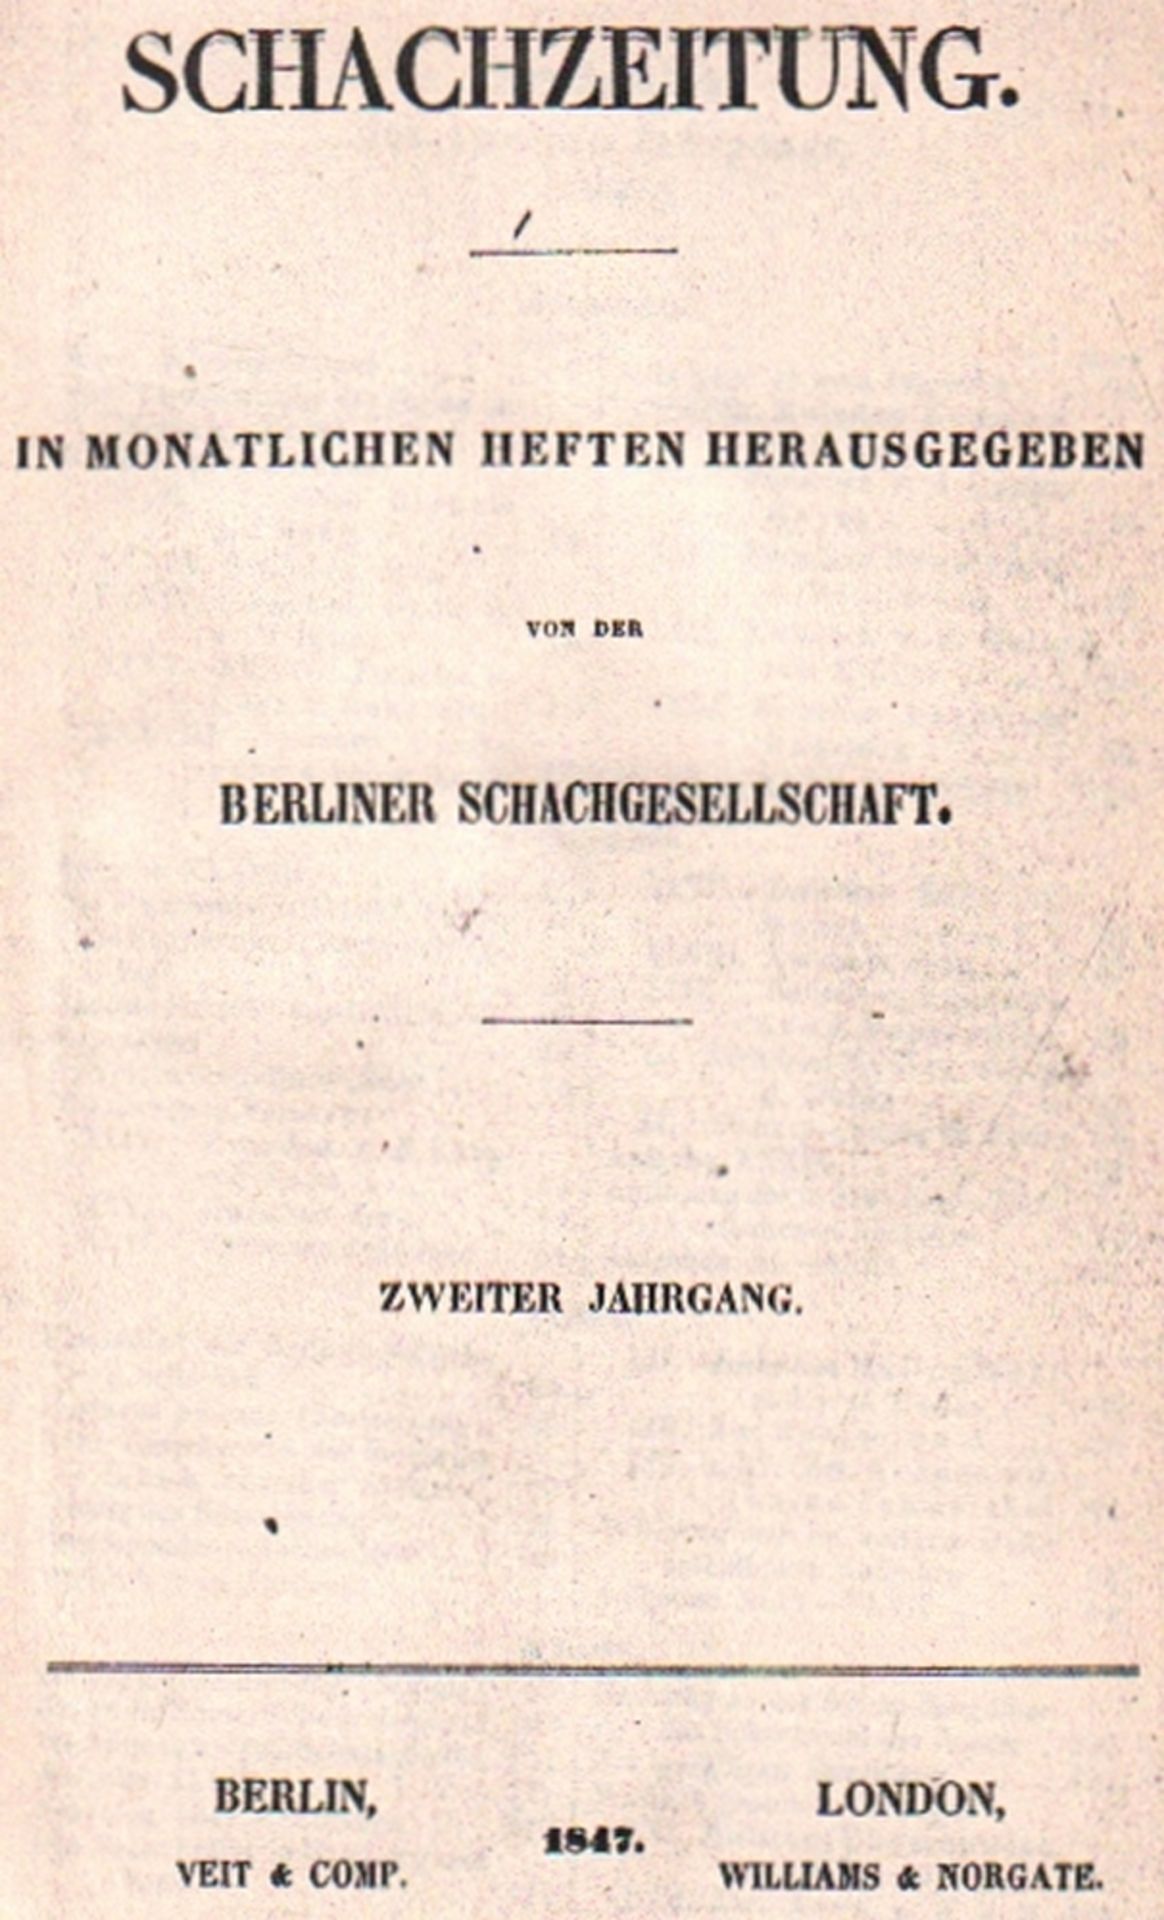 (Deutsche) Schachzeitung. Herausgegeben von der Berliner Schachgesellschaft. 2. Jahrgang 1847 -